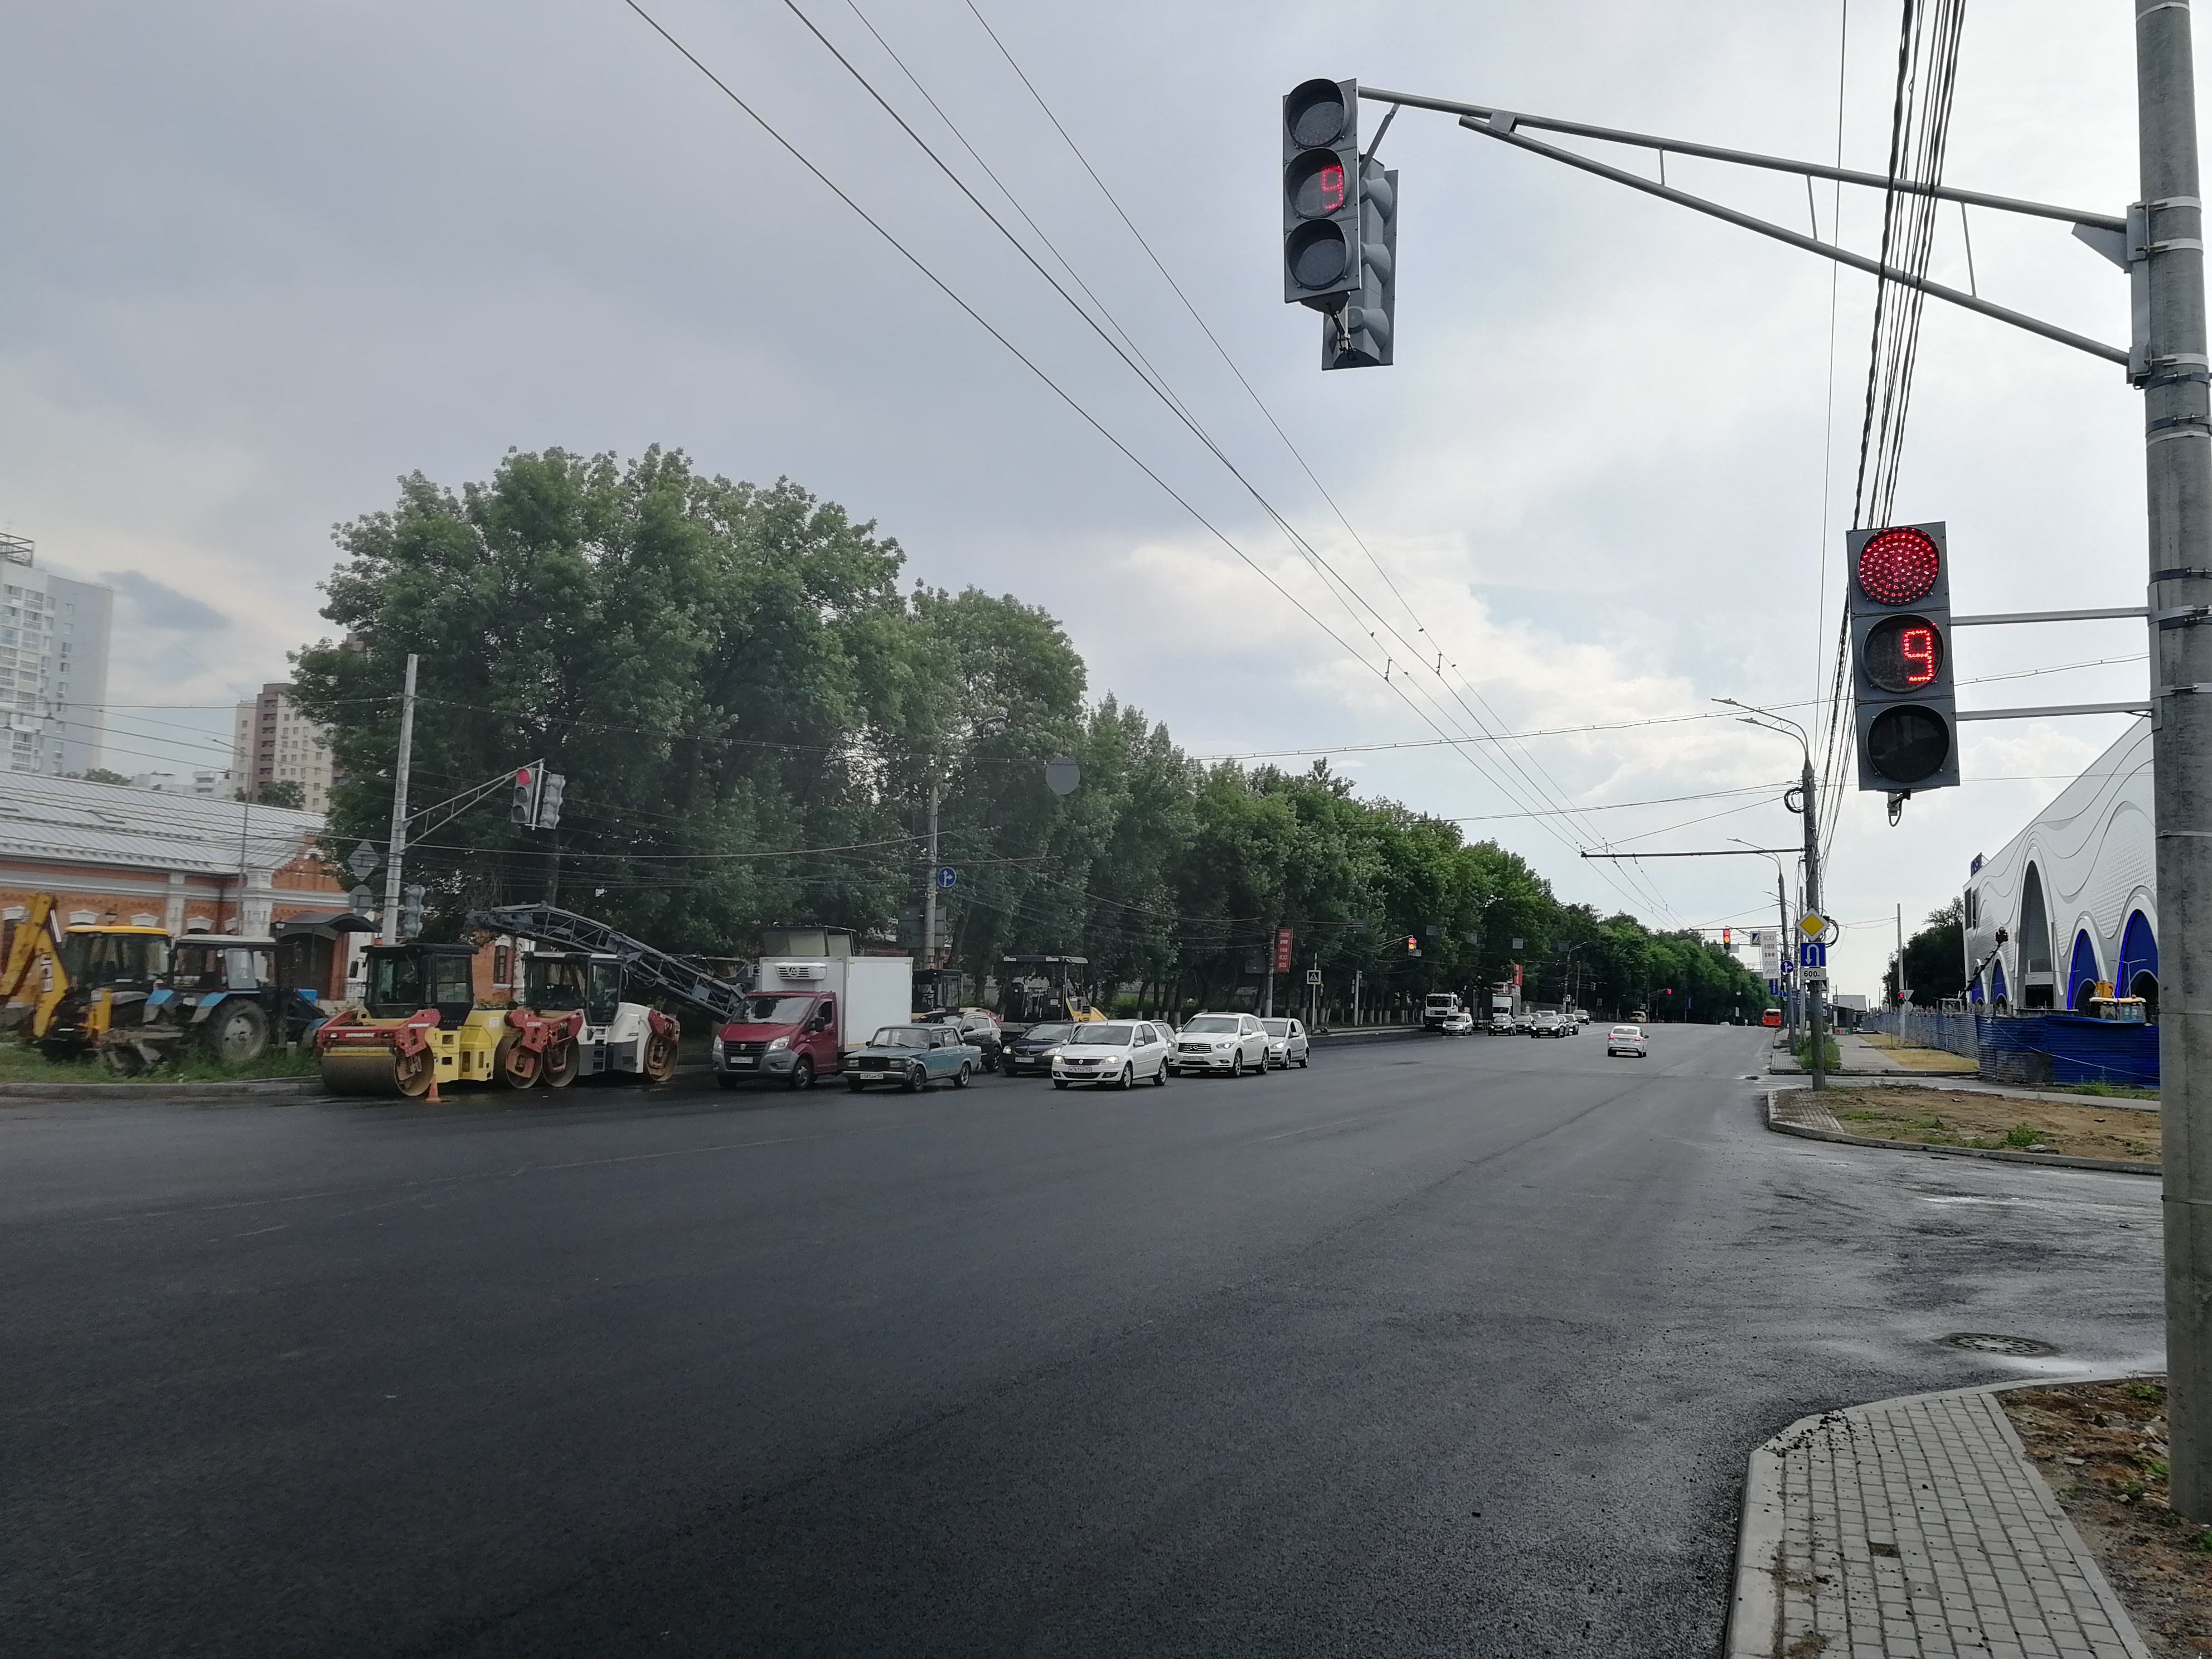 Новые светофоры начали работать на проспекте Гагарина в Нижнем Новгороде - фото 1